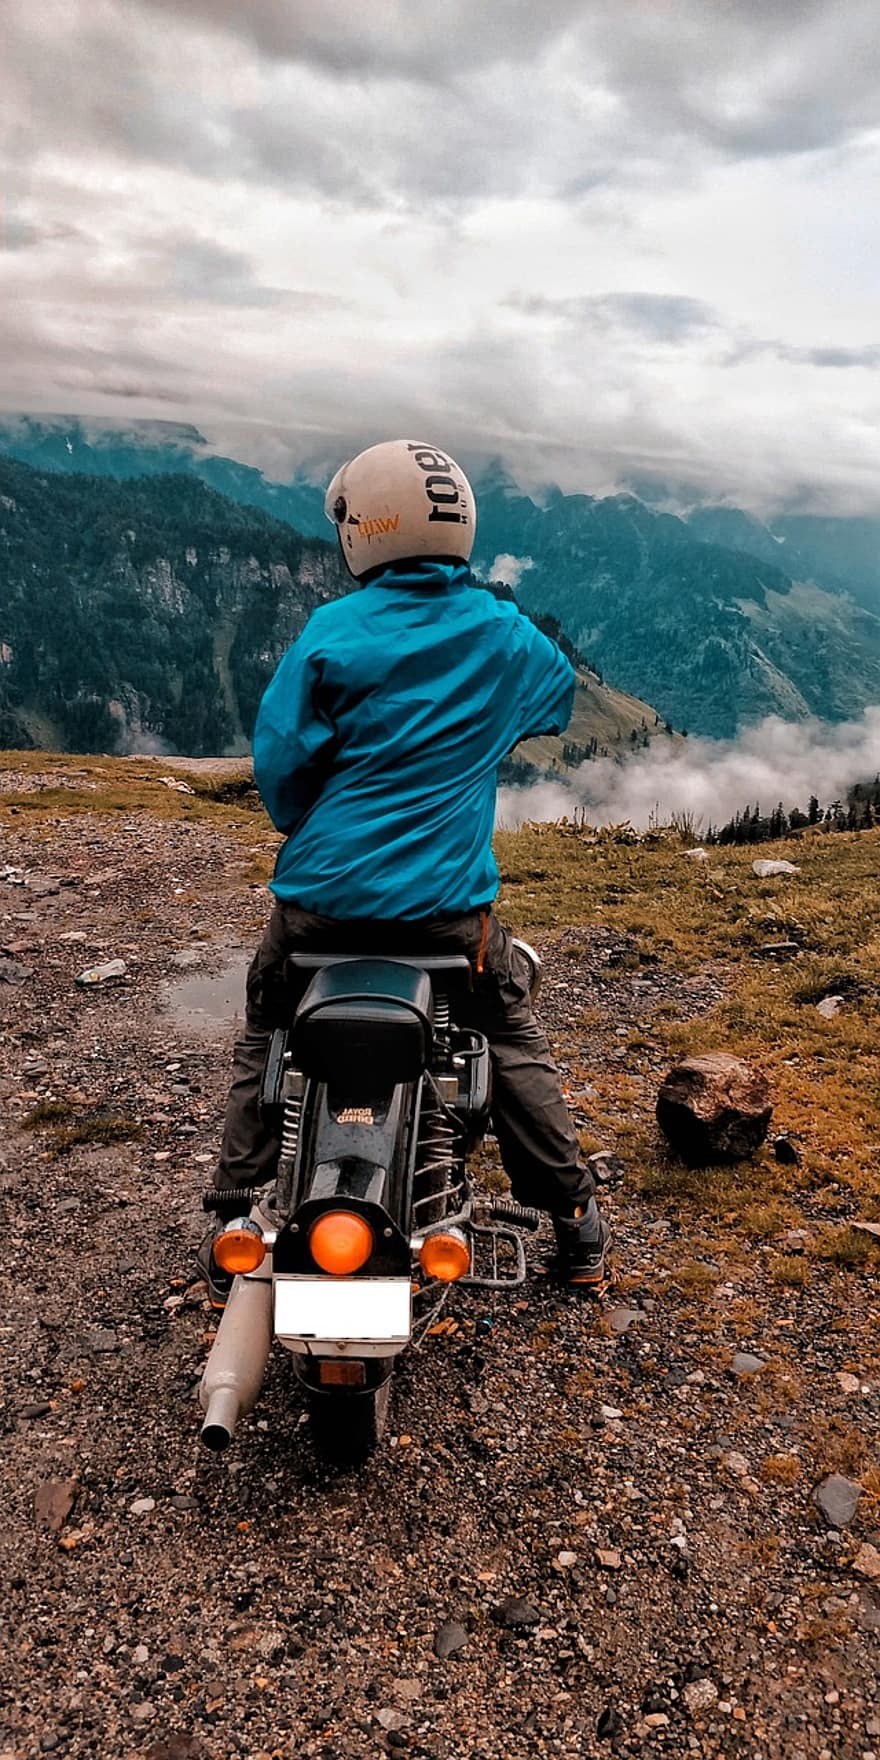 मोटरसाइकिल, सवार, पहाड़ों, यात्रा, एकांत, बाइकर, आकाश, शिखर, बादलों, पर्वत का दृध्य, मोटरसाइकिल की सवारी